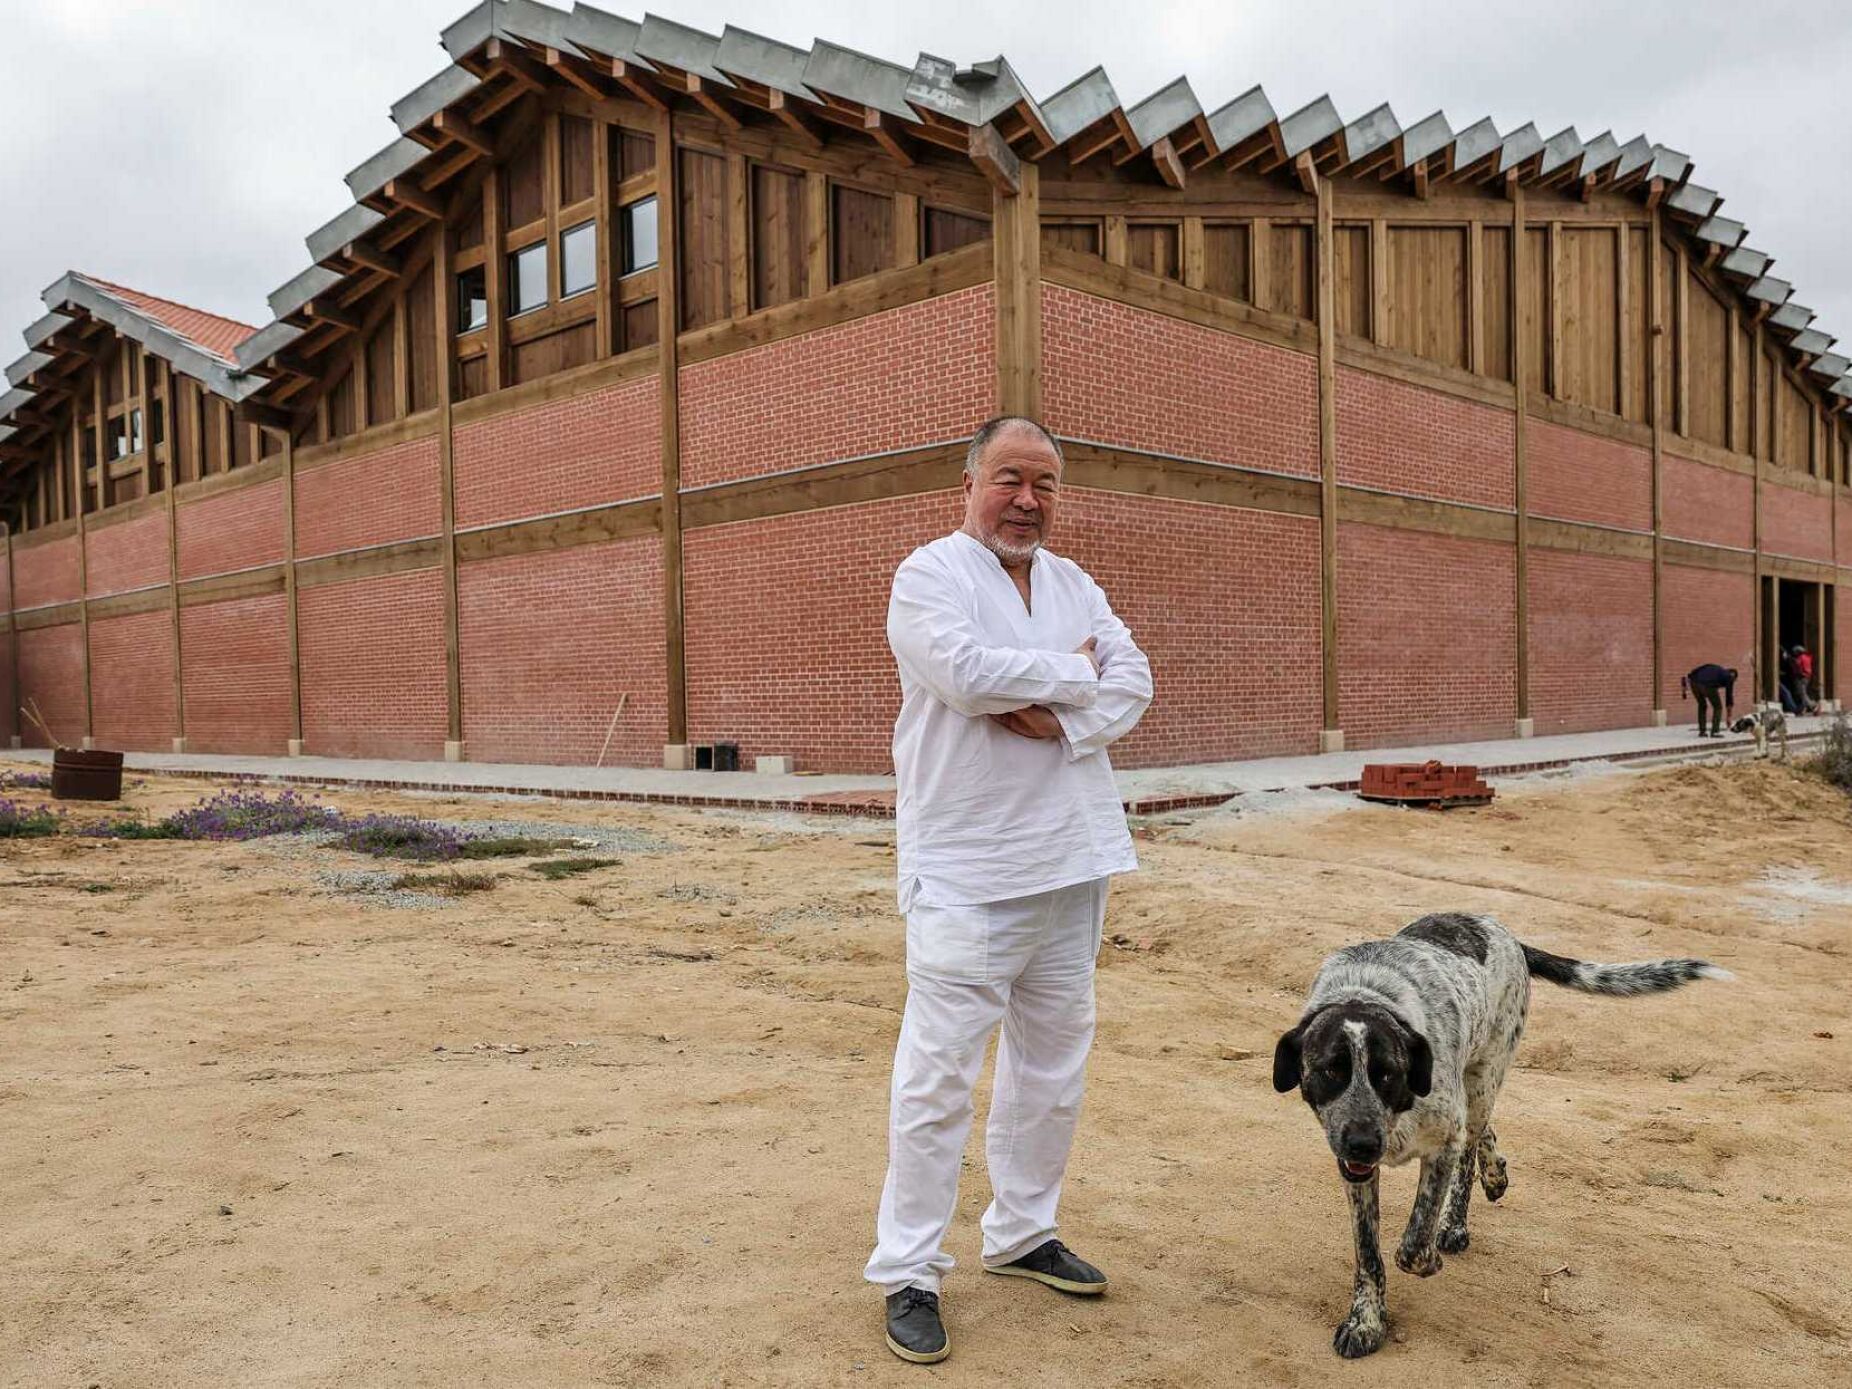 Weiwei construiu um edifício “sem propósito” em Montemor-o-Novo, mas ainda não chama “casa” ao Alentejo